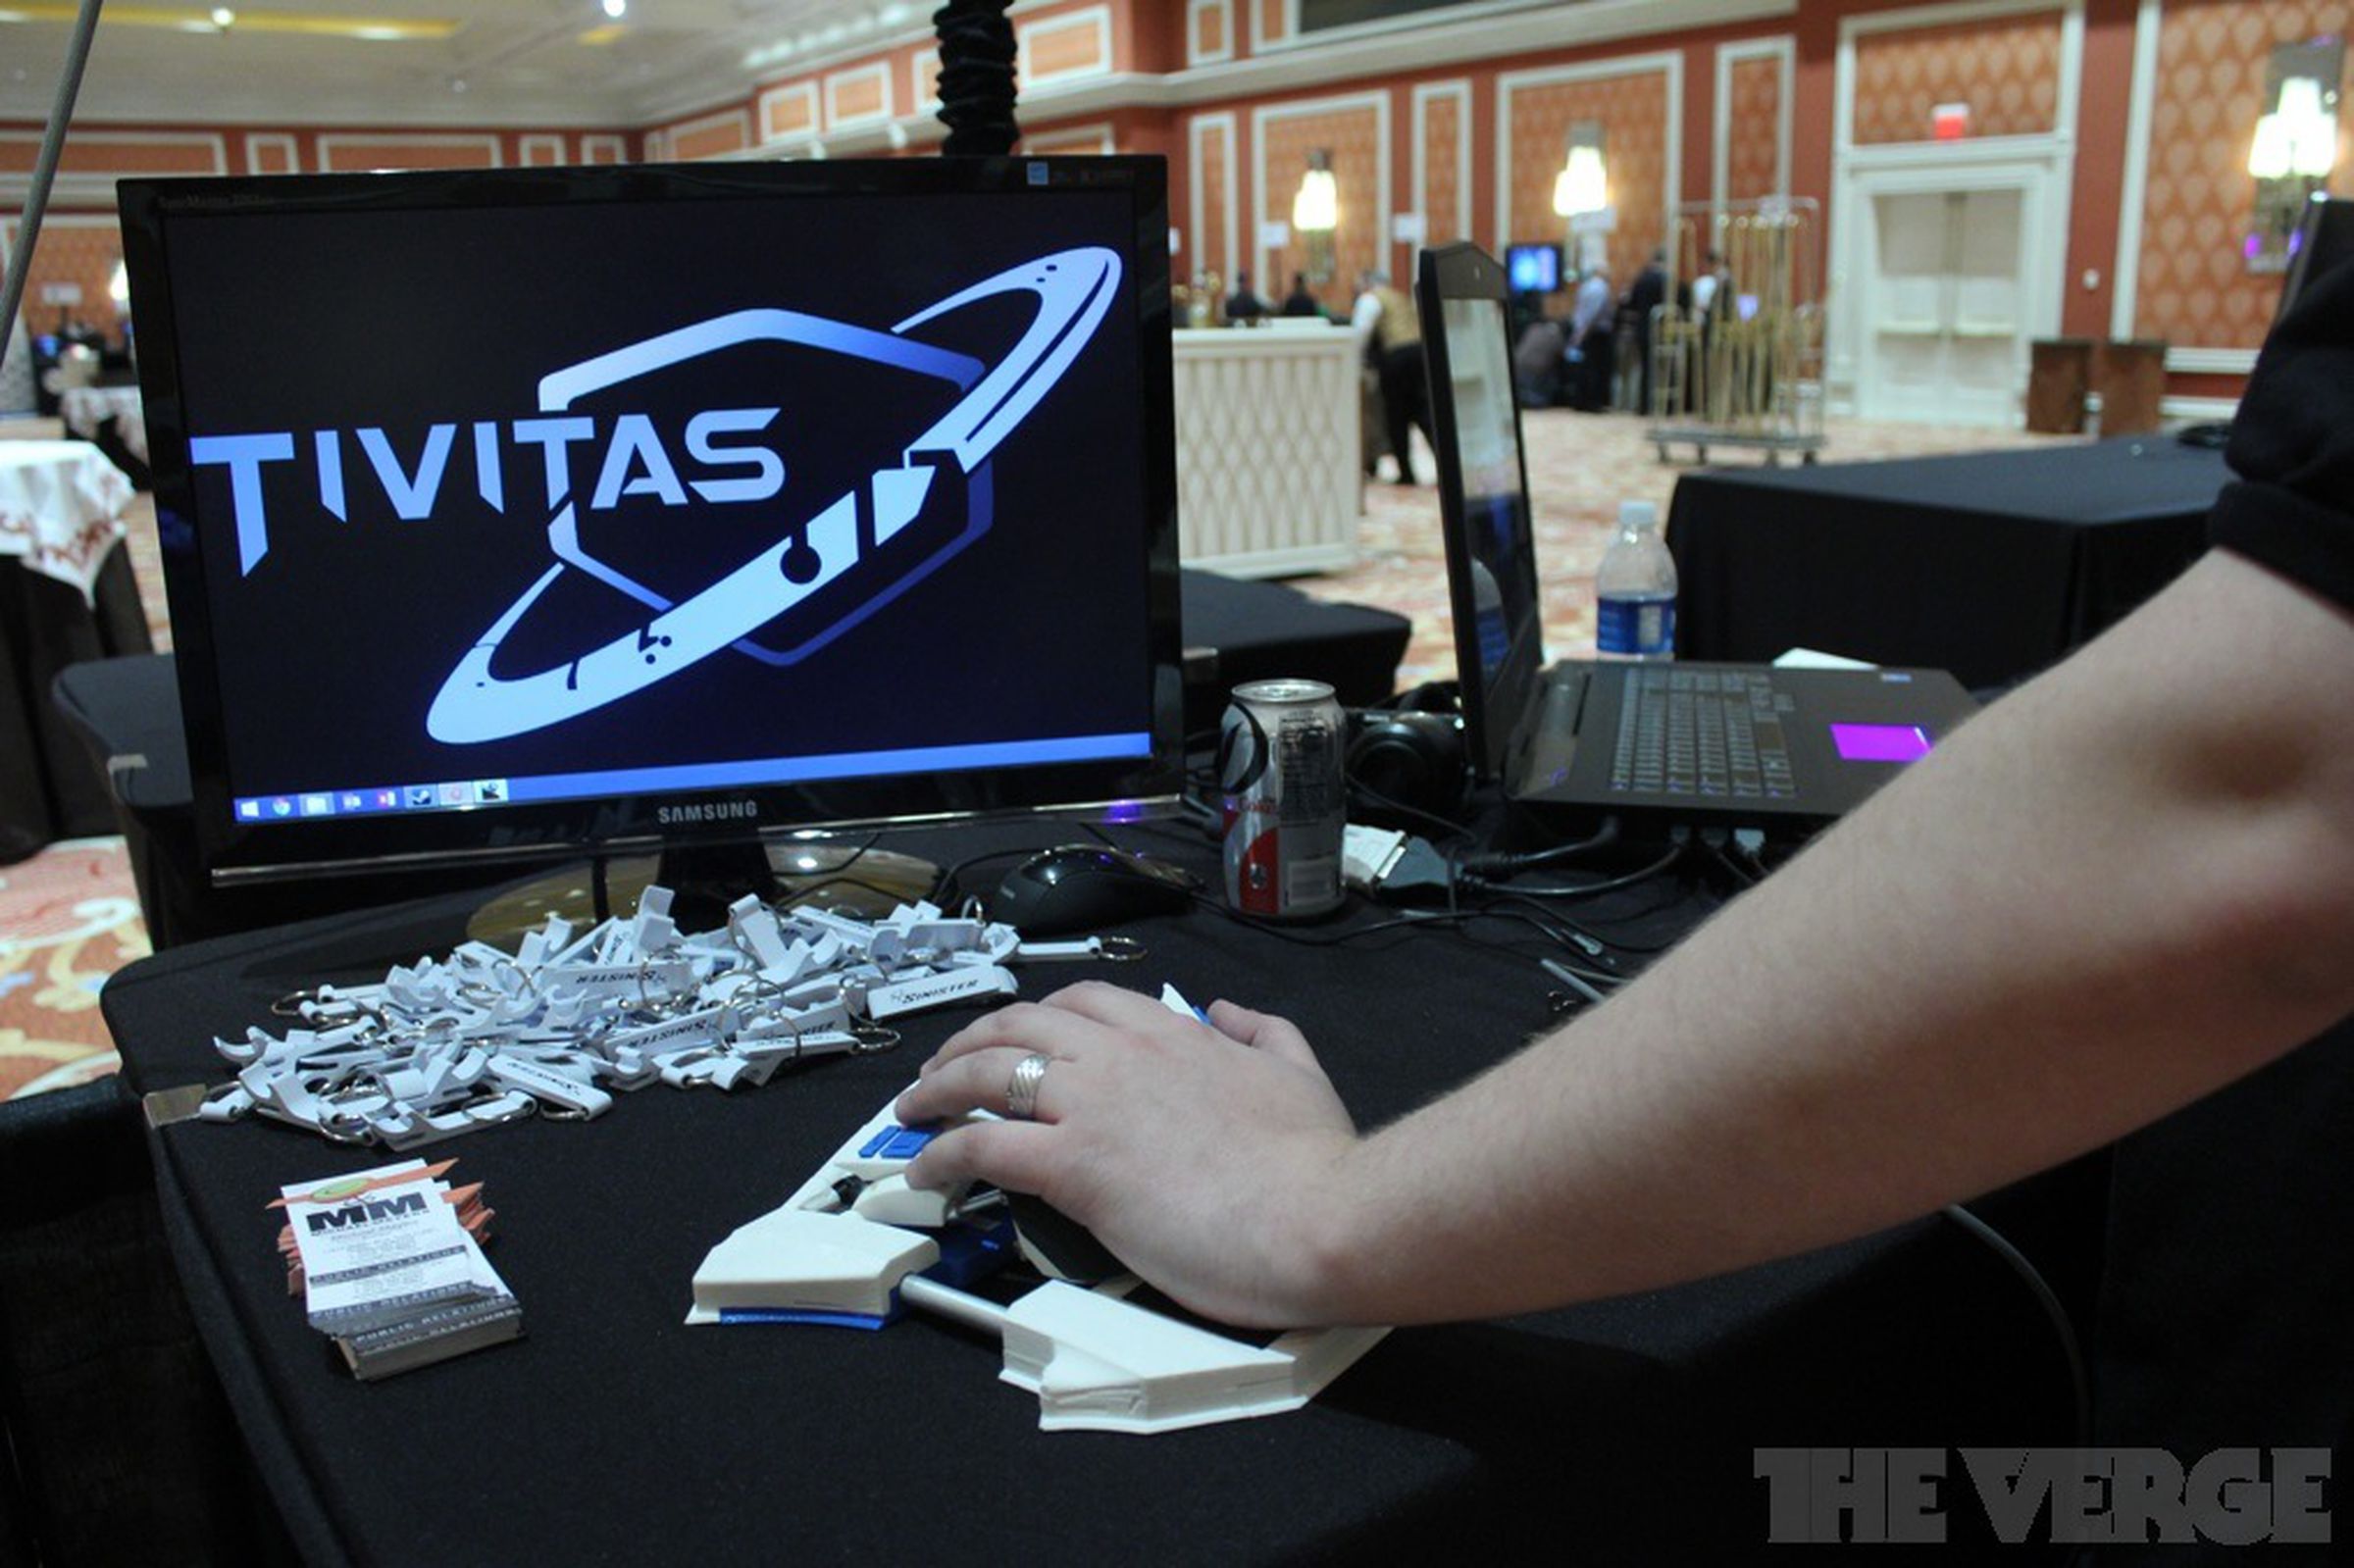 Tivitas Sinister gamepad prototypes